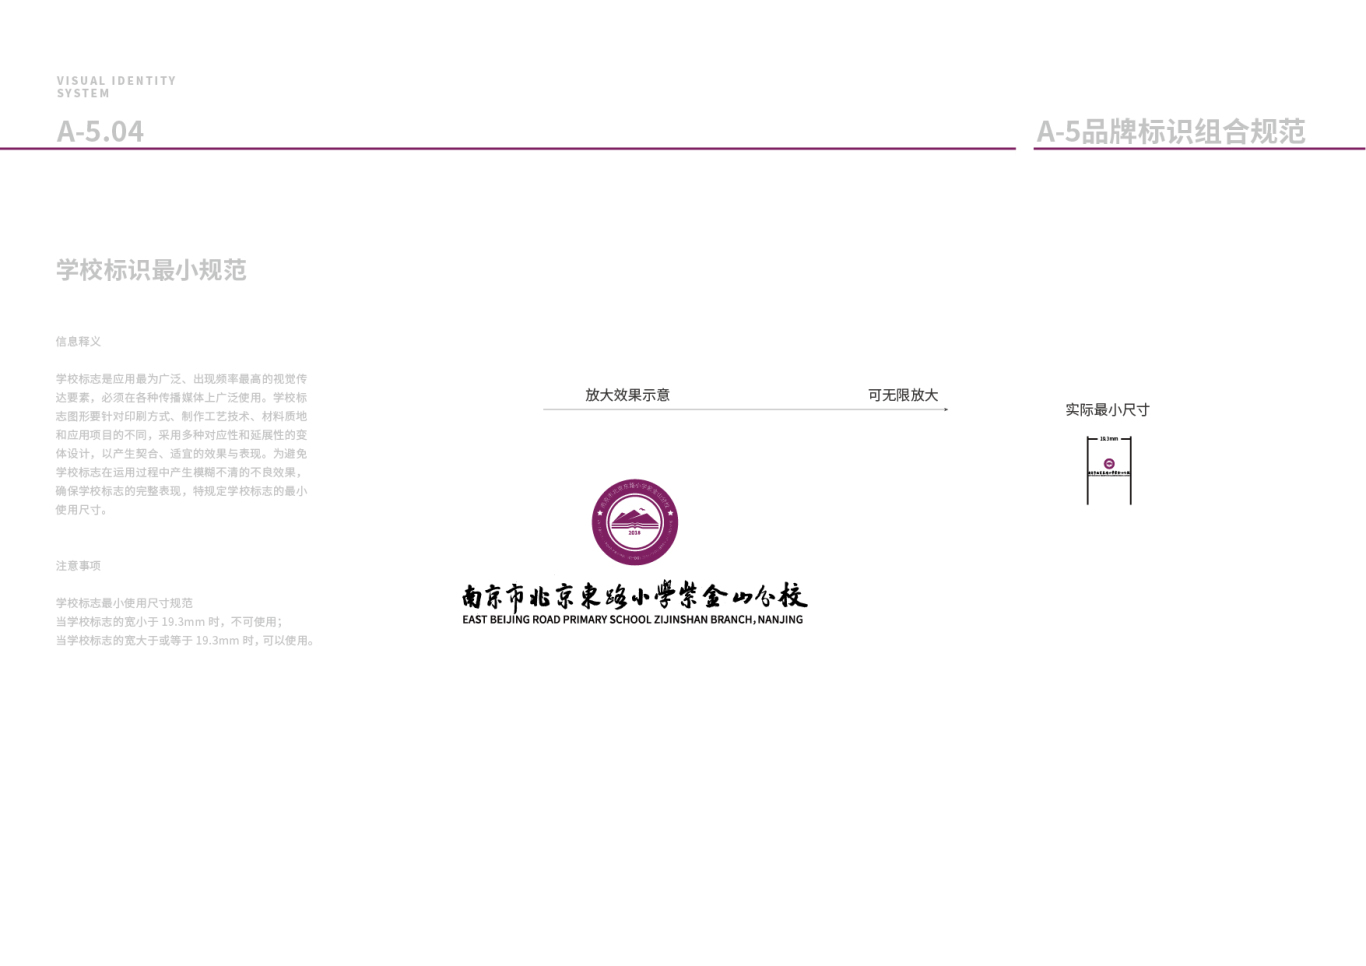 南京市北京东路小学紫金山分校logo+VI设计图27